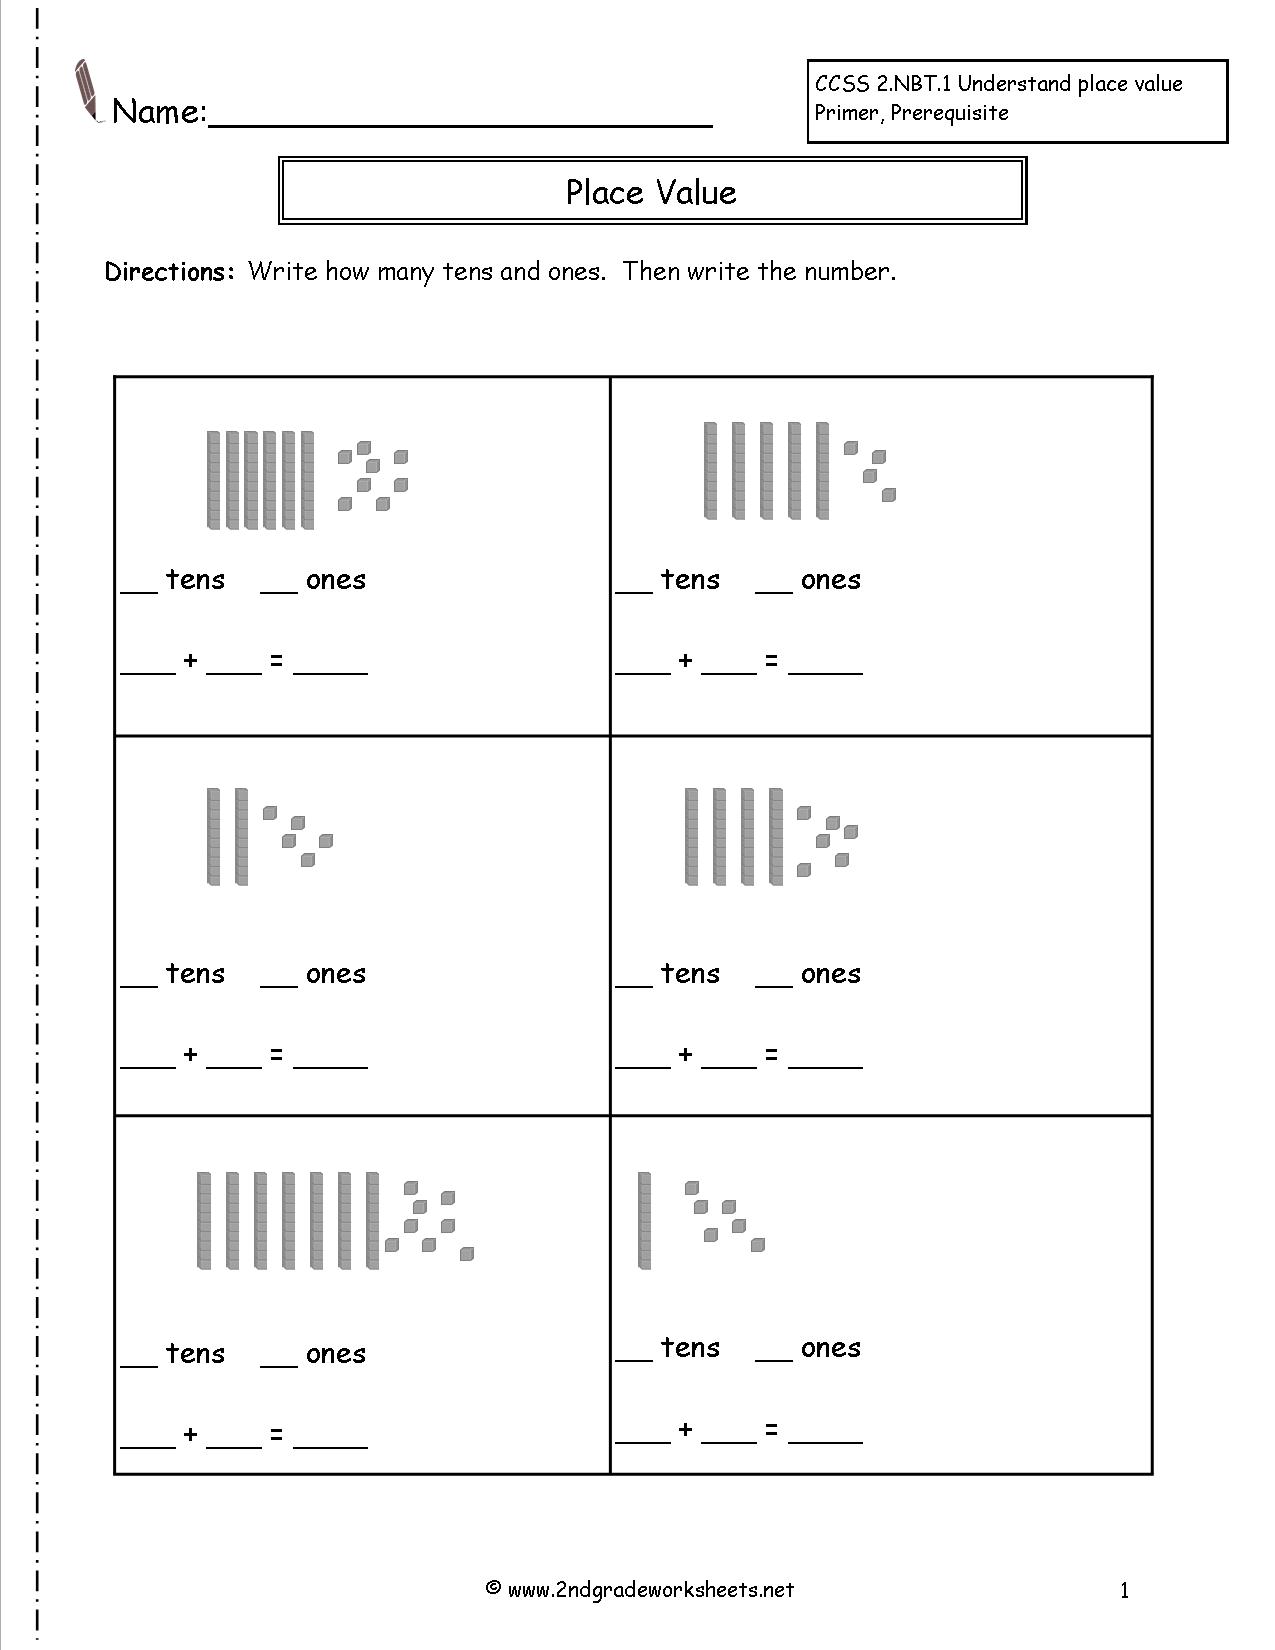 Place Value Worksheets 2nd Grade Image